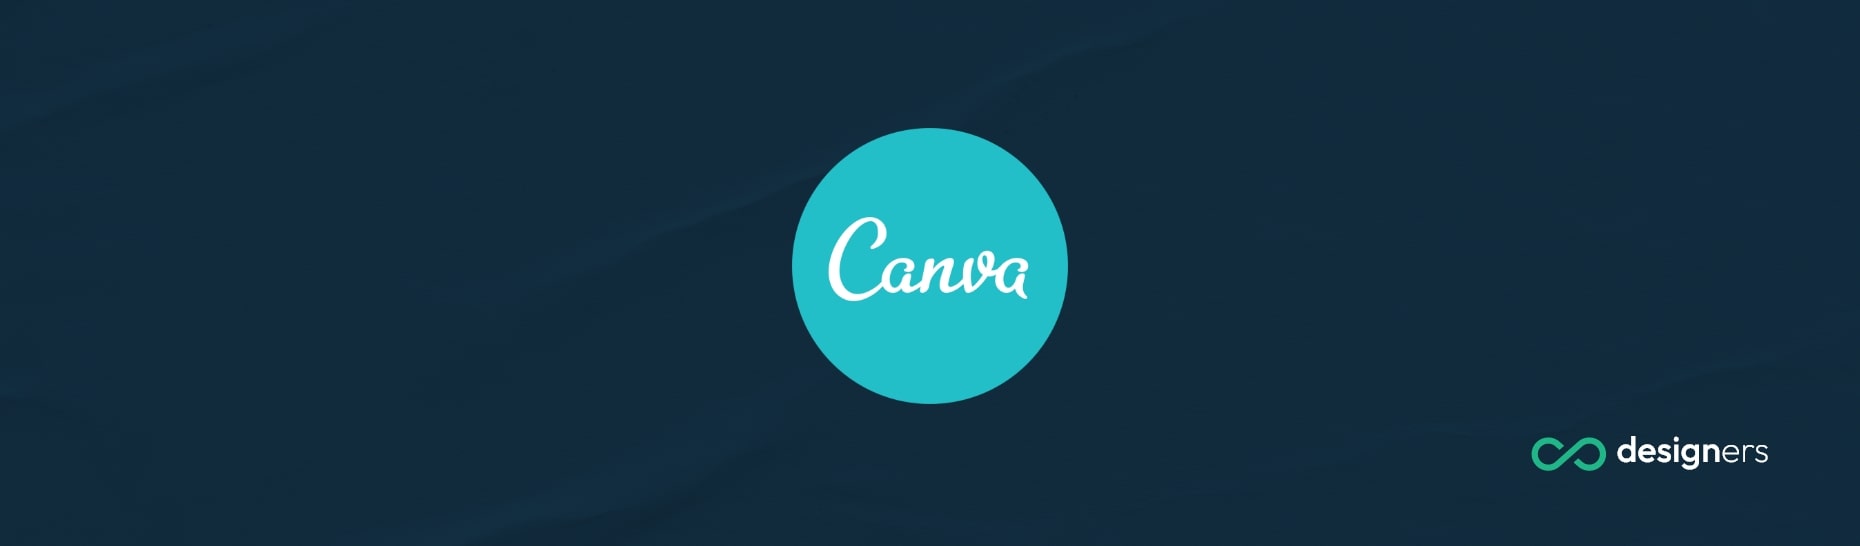 How Do I Upload a Custom Template to Canva?